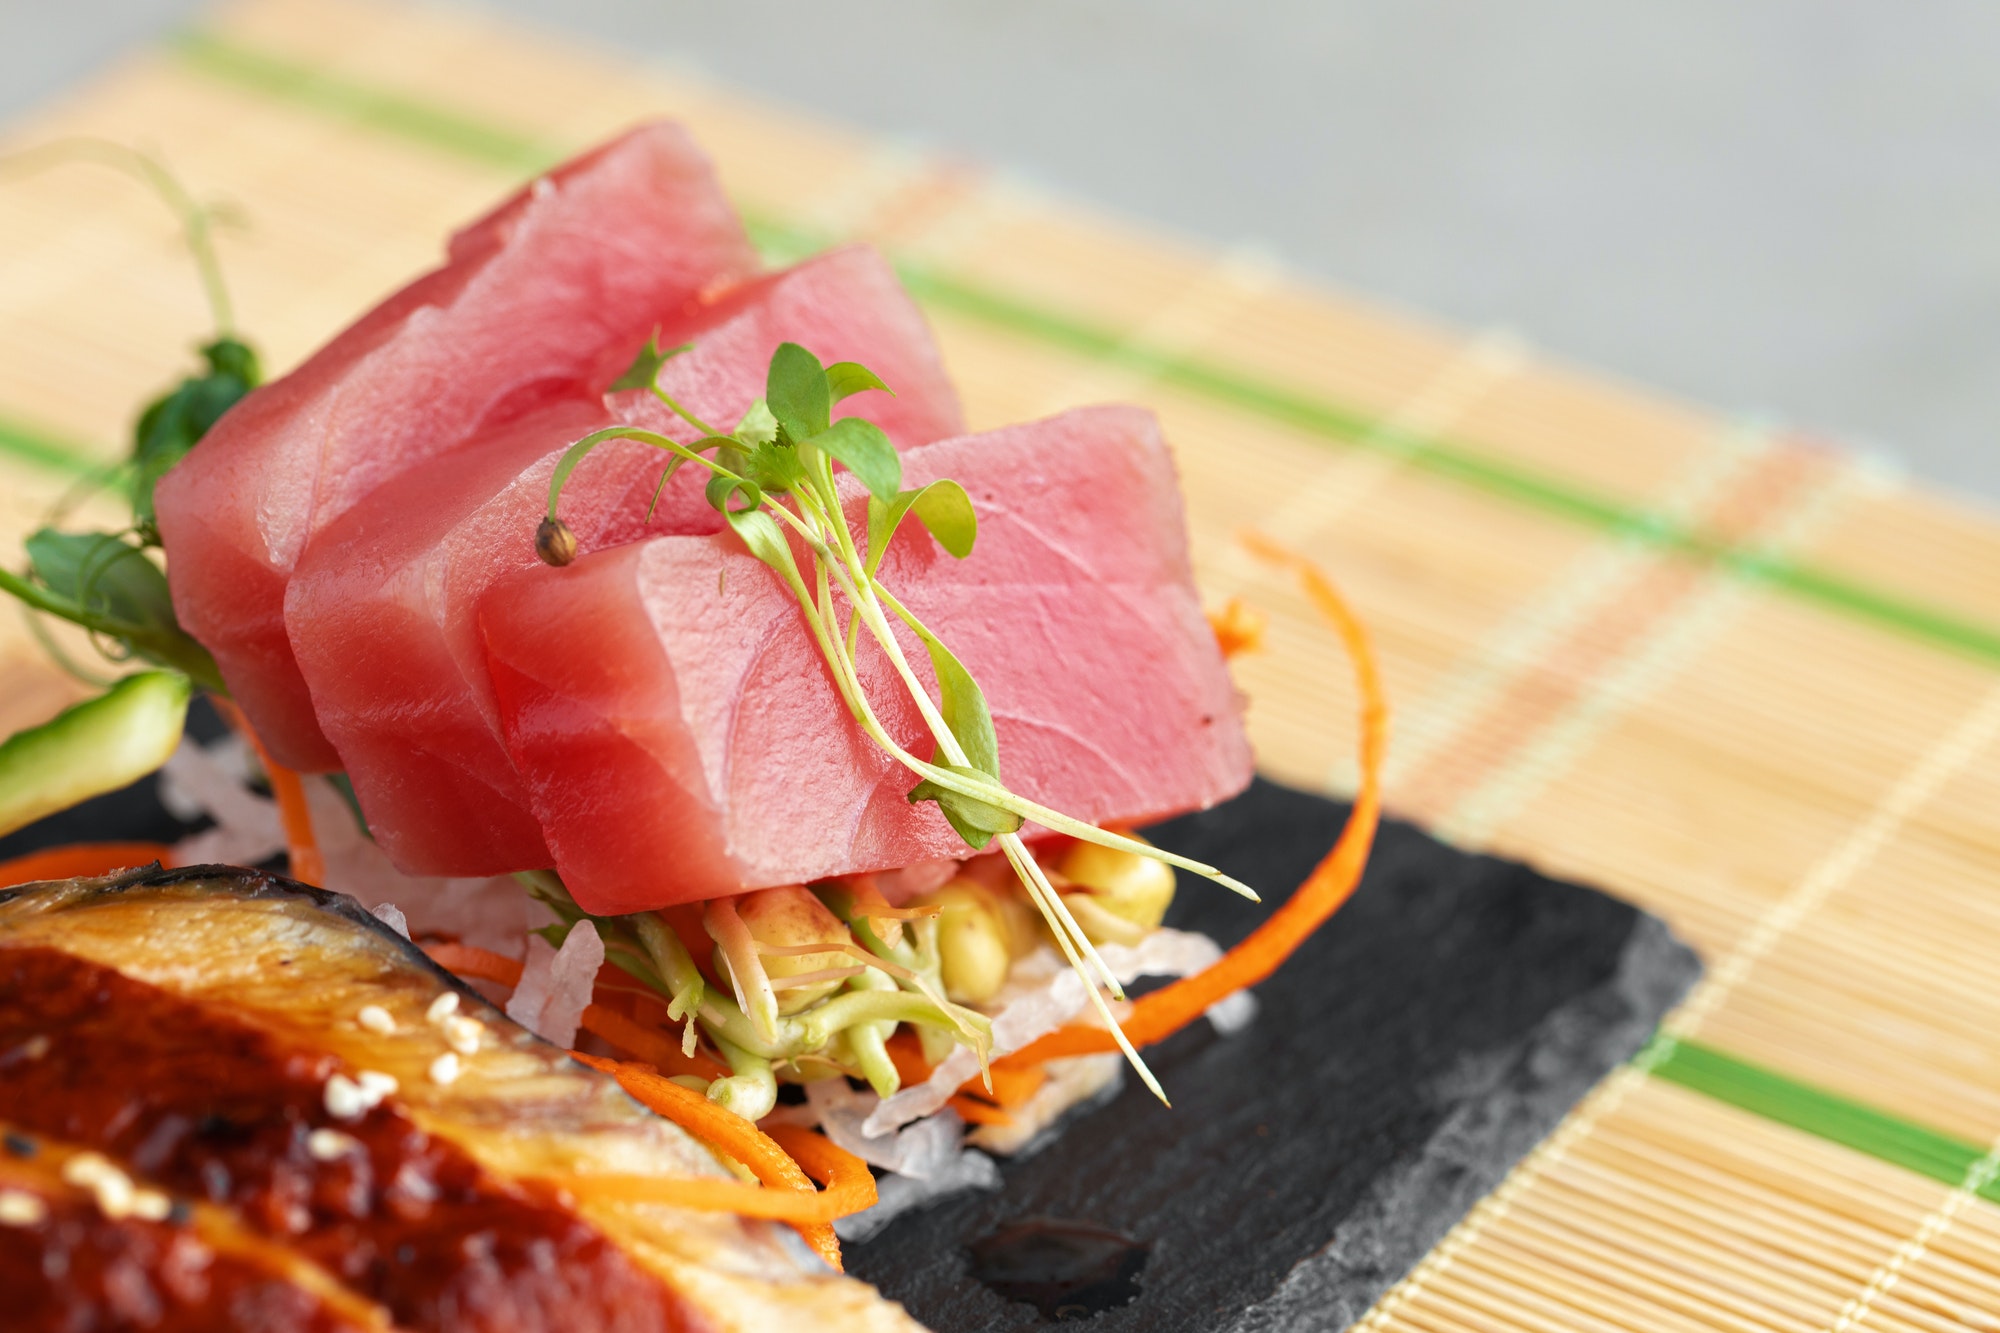 Sashimi sushi served on stone plate close up